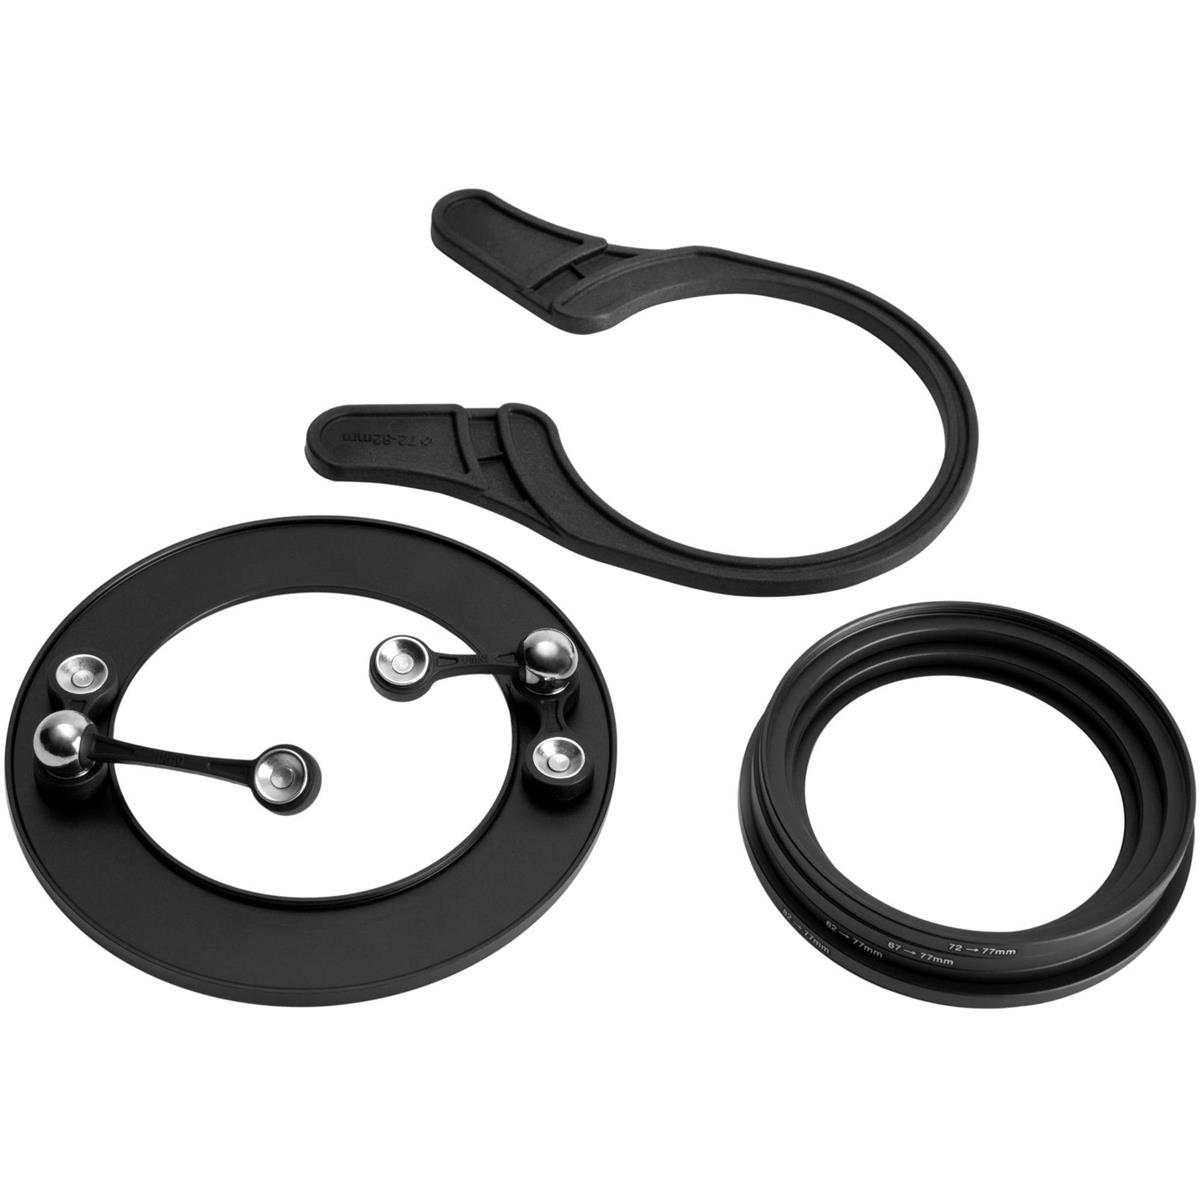 Image of Lensbaby OMNI Ring Set